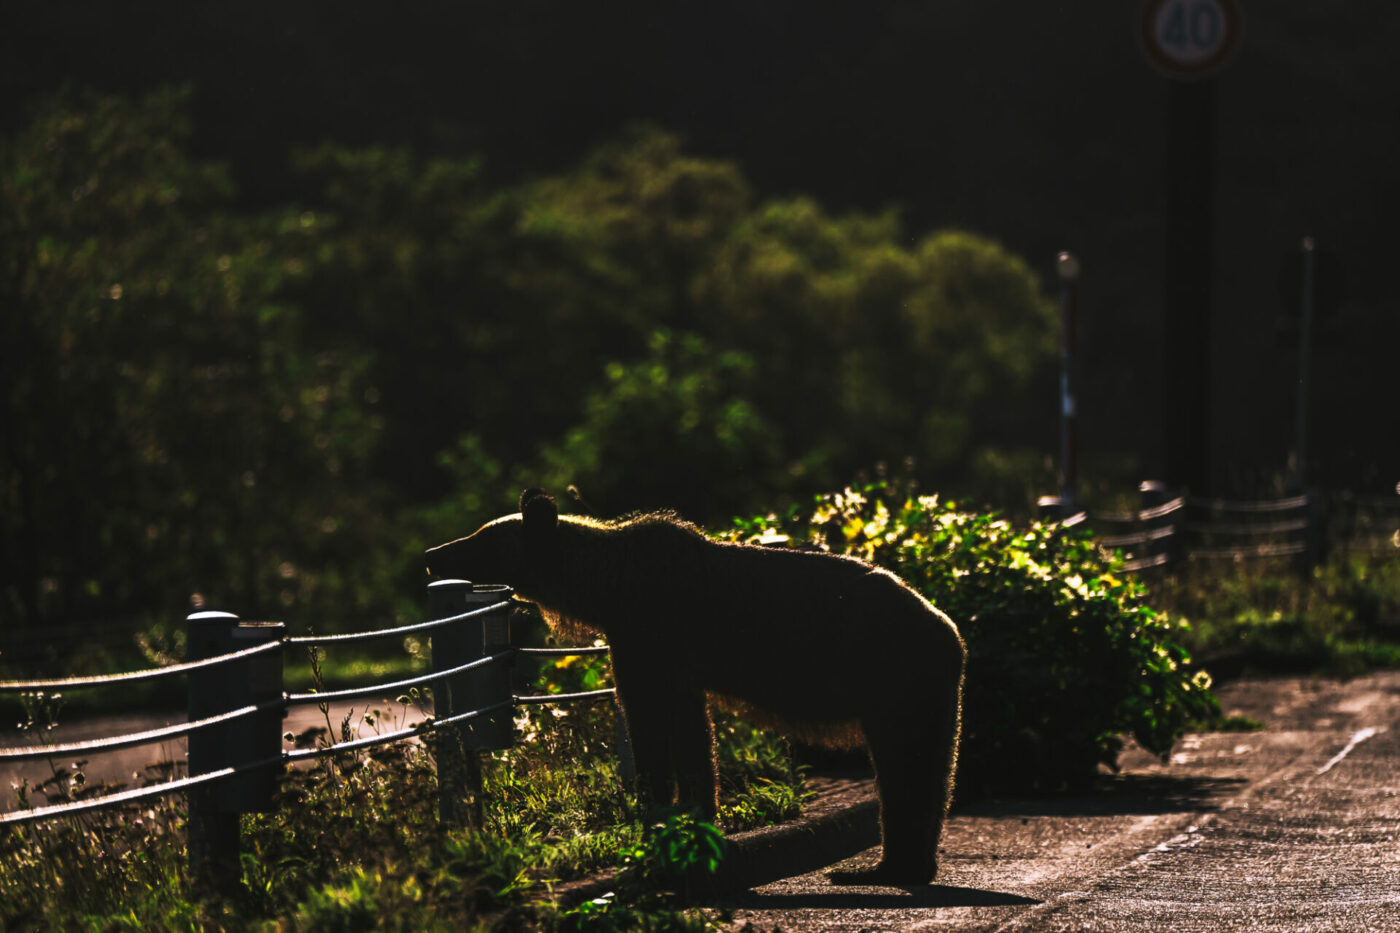 Bear spotted at Shiretoko National Park